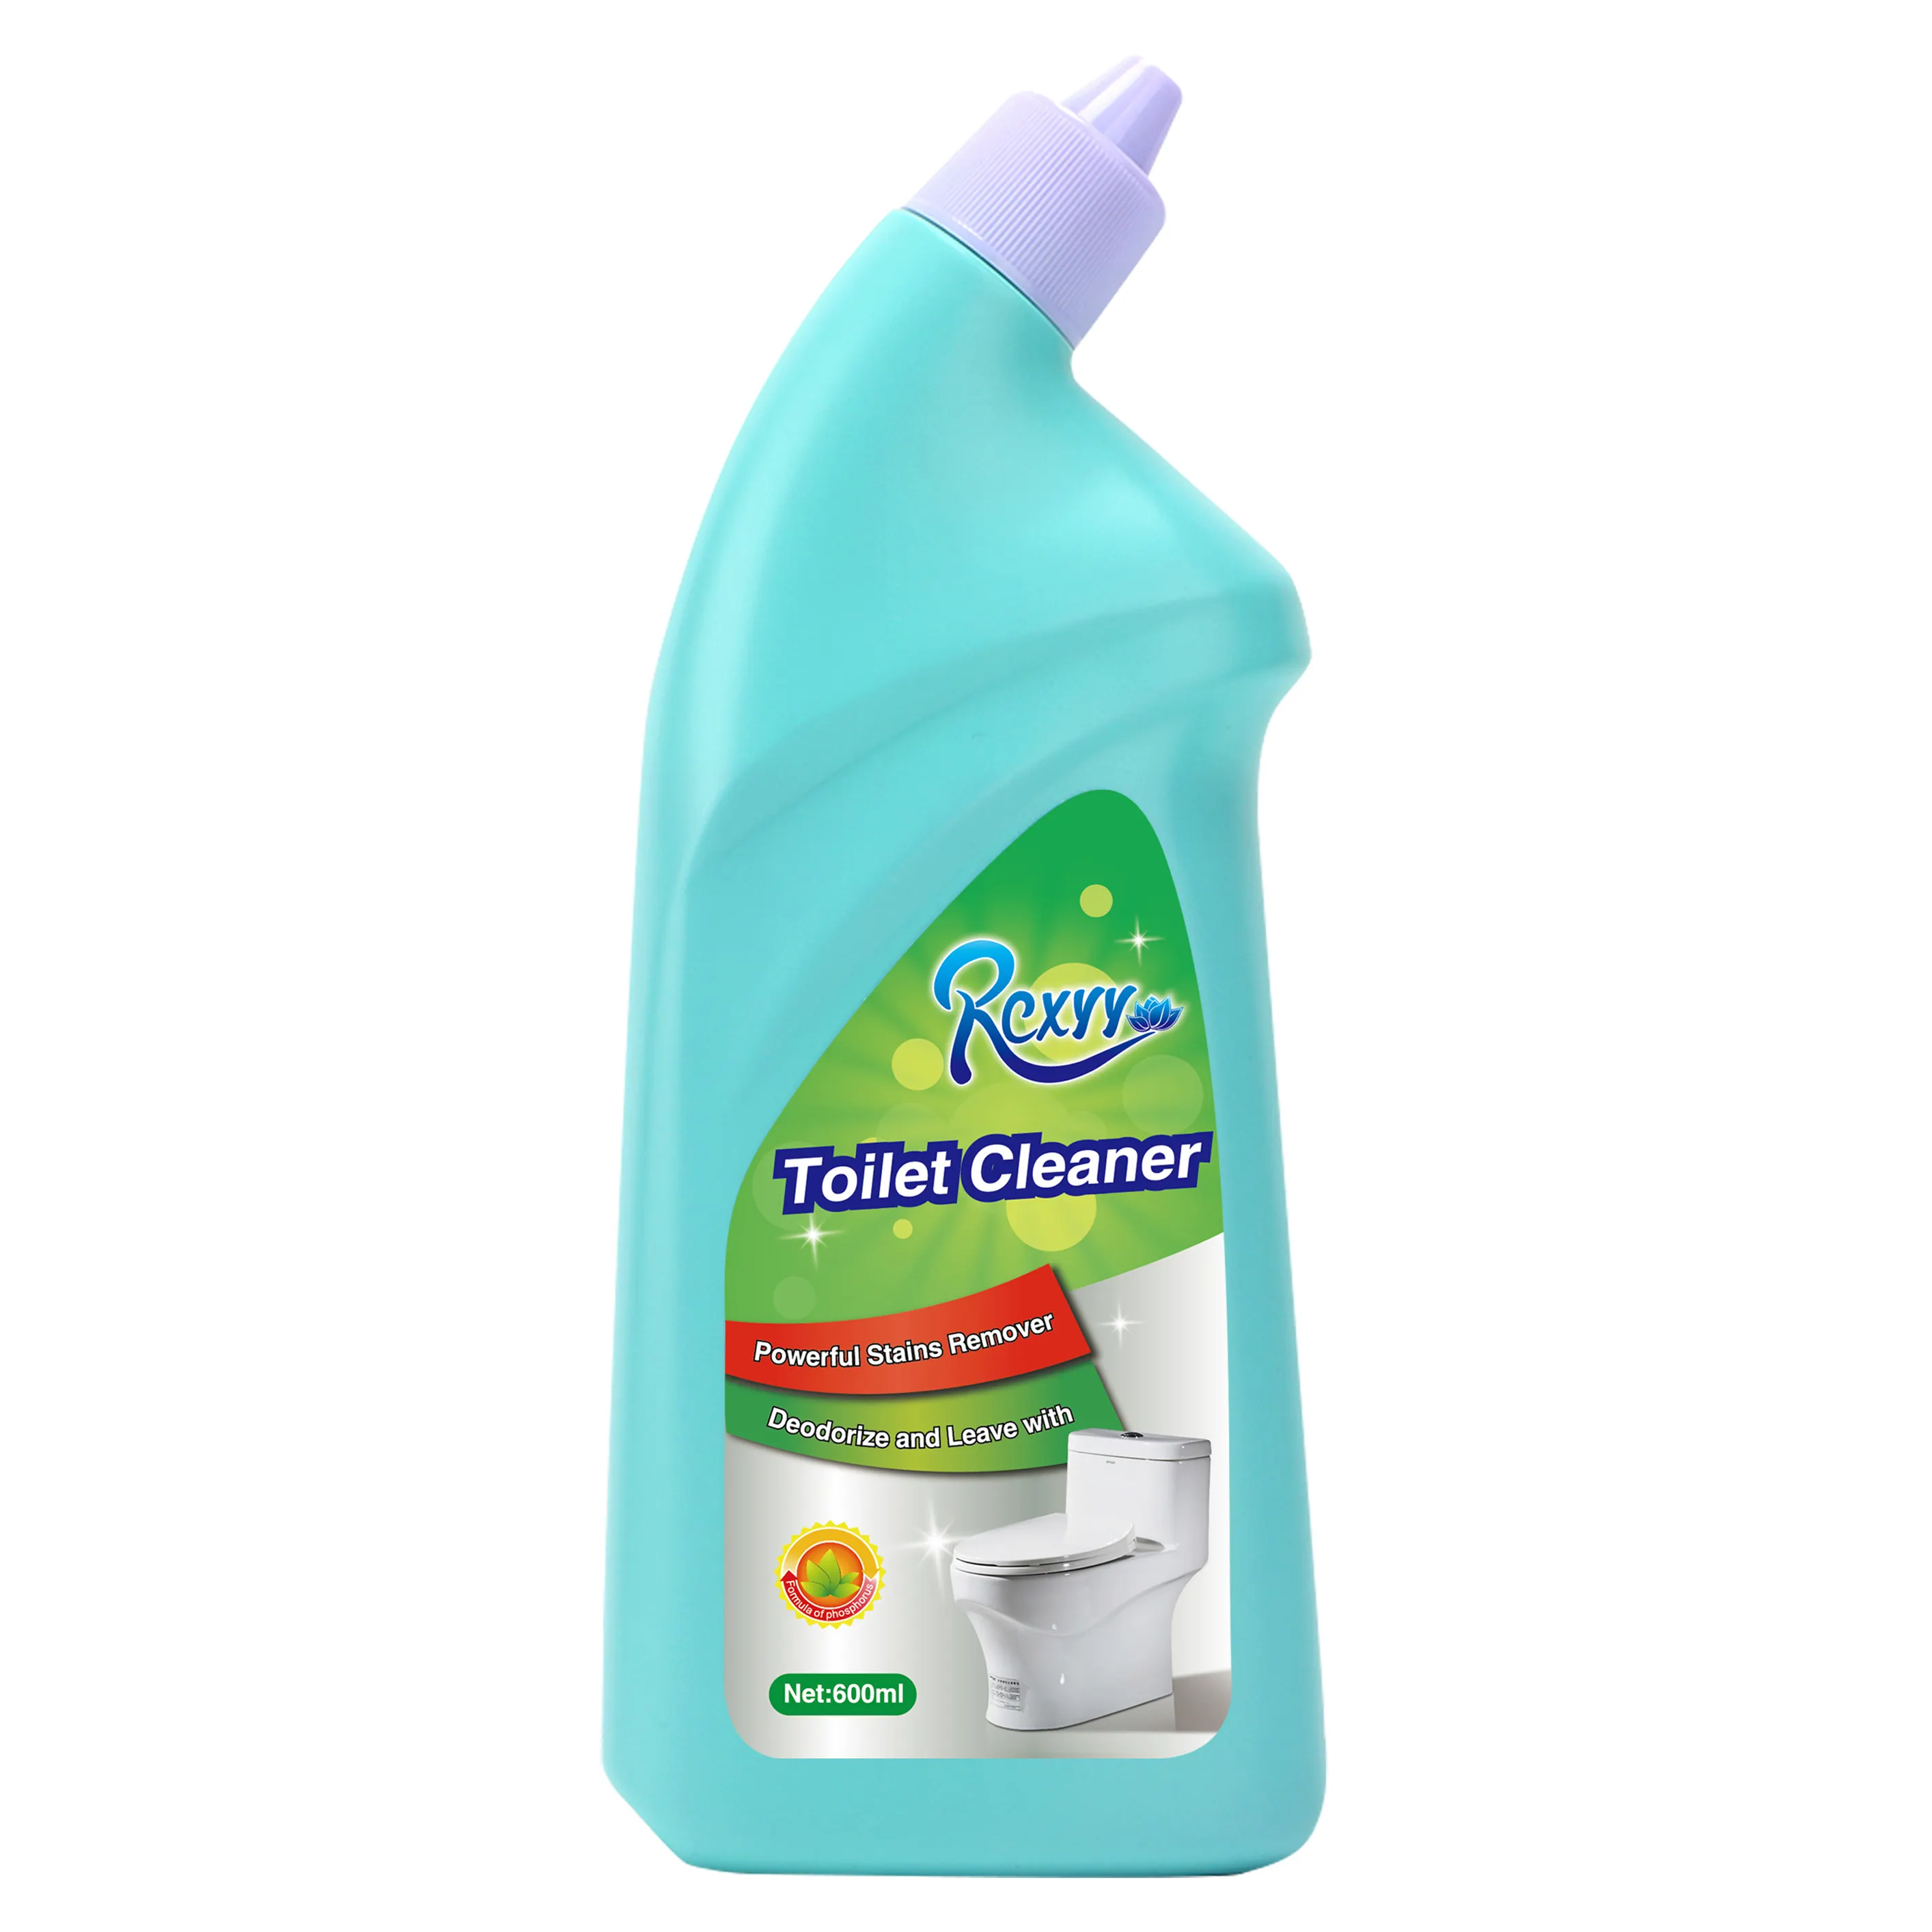 Productos de limpieza para el hogar al por mayor, la mejor fórmula química, inodoro, limpiador líquido, detergentes